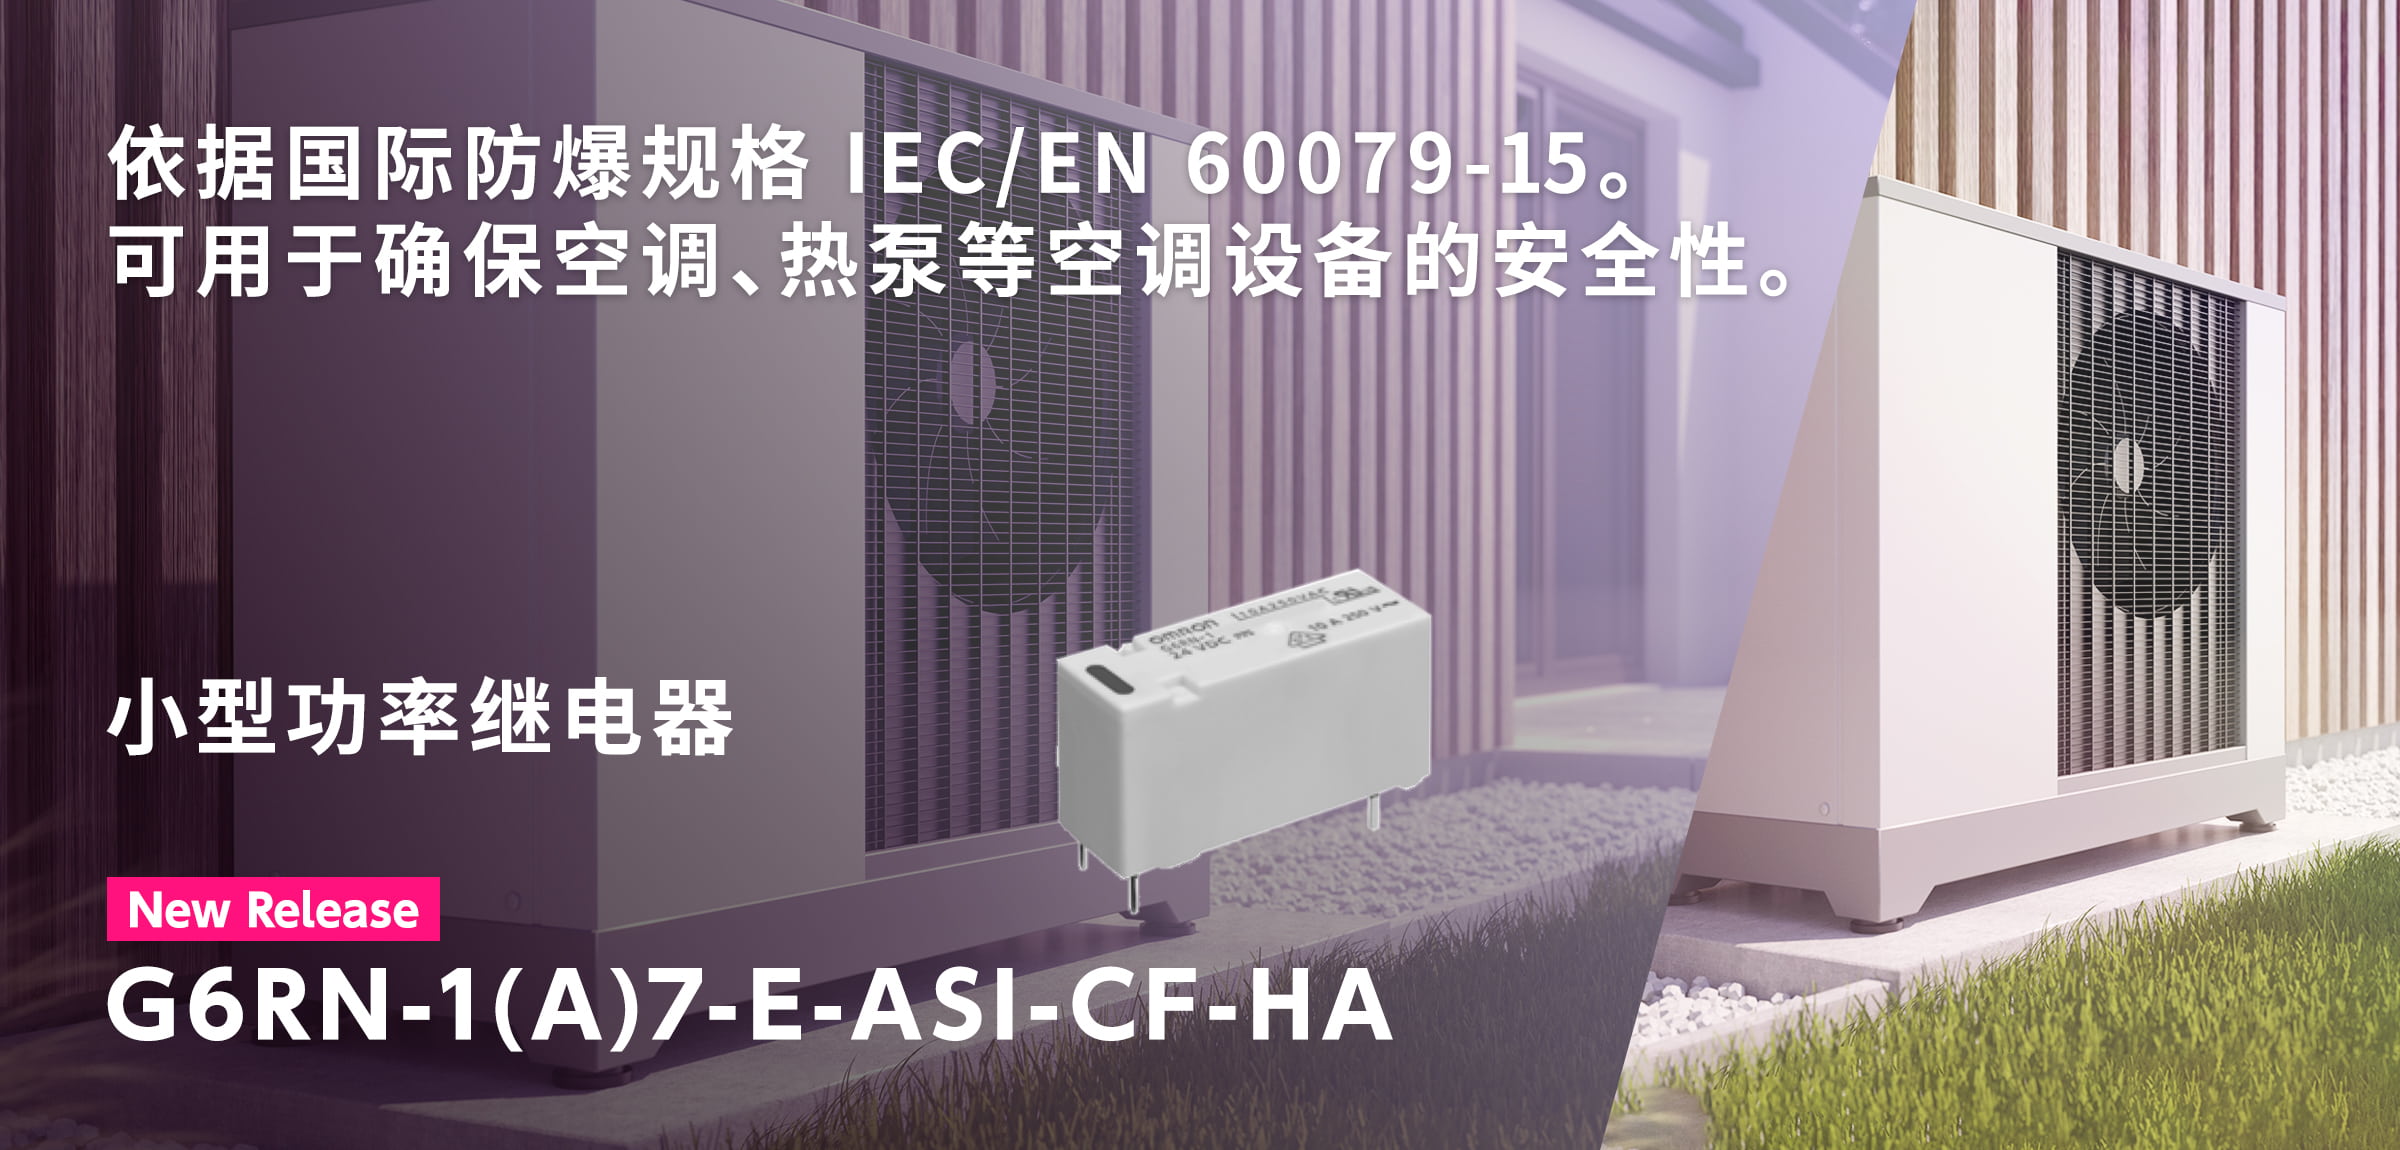 依据国际防爆规格 IEC/EN 60079-15。 可用于确保空调、热泵等空调设备的安全性。小型功率继电器G6RN-1(A)7-E-ASI-CF-HA